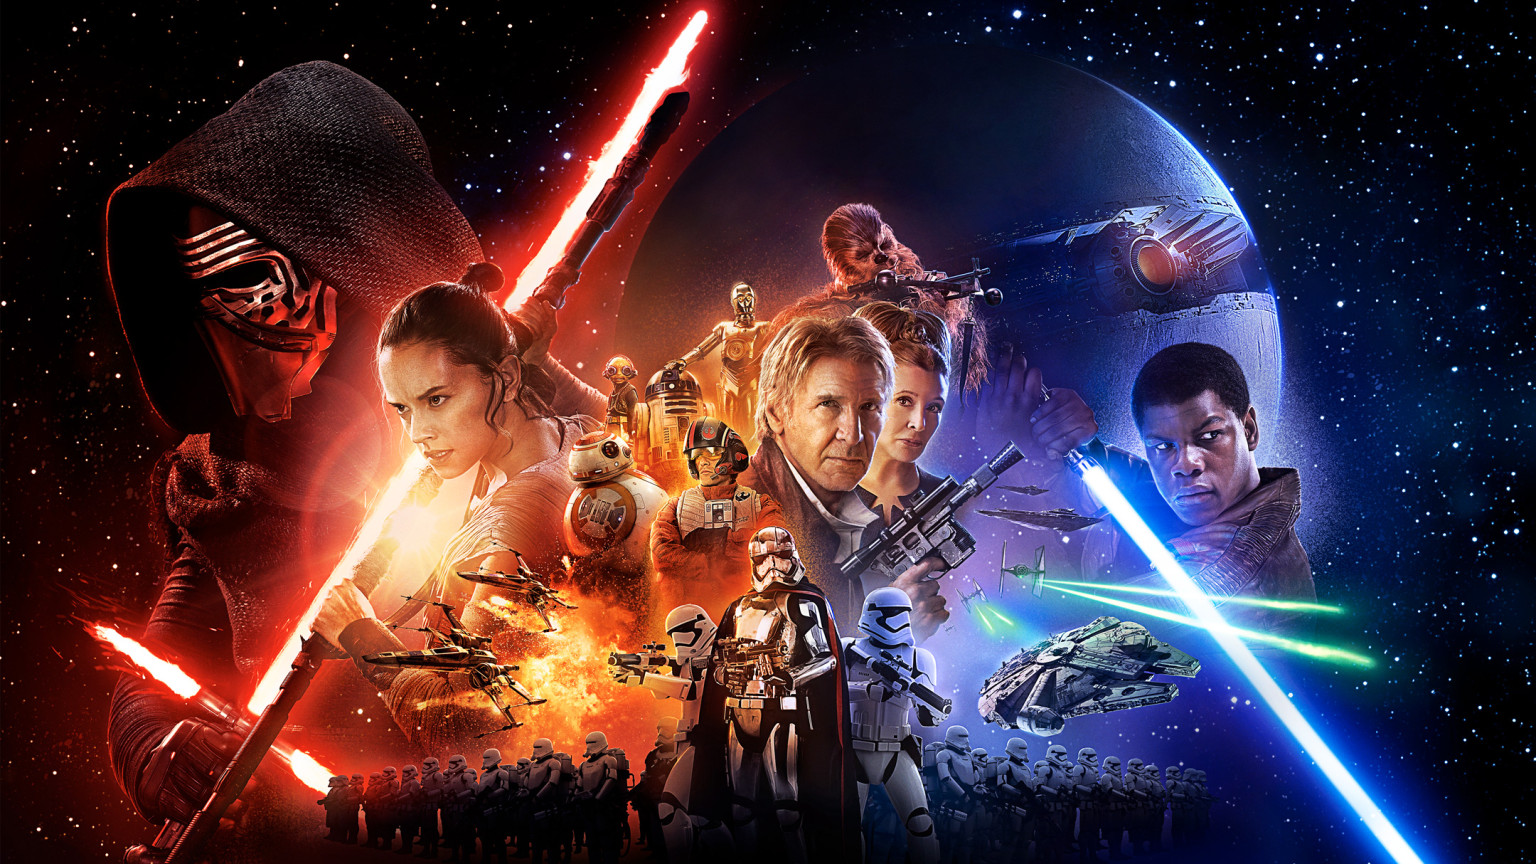 Force Awakens: Star Wars Spoilers